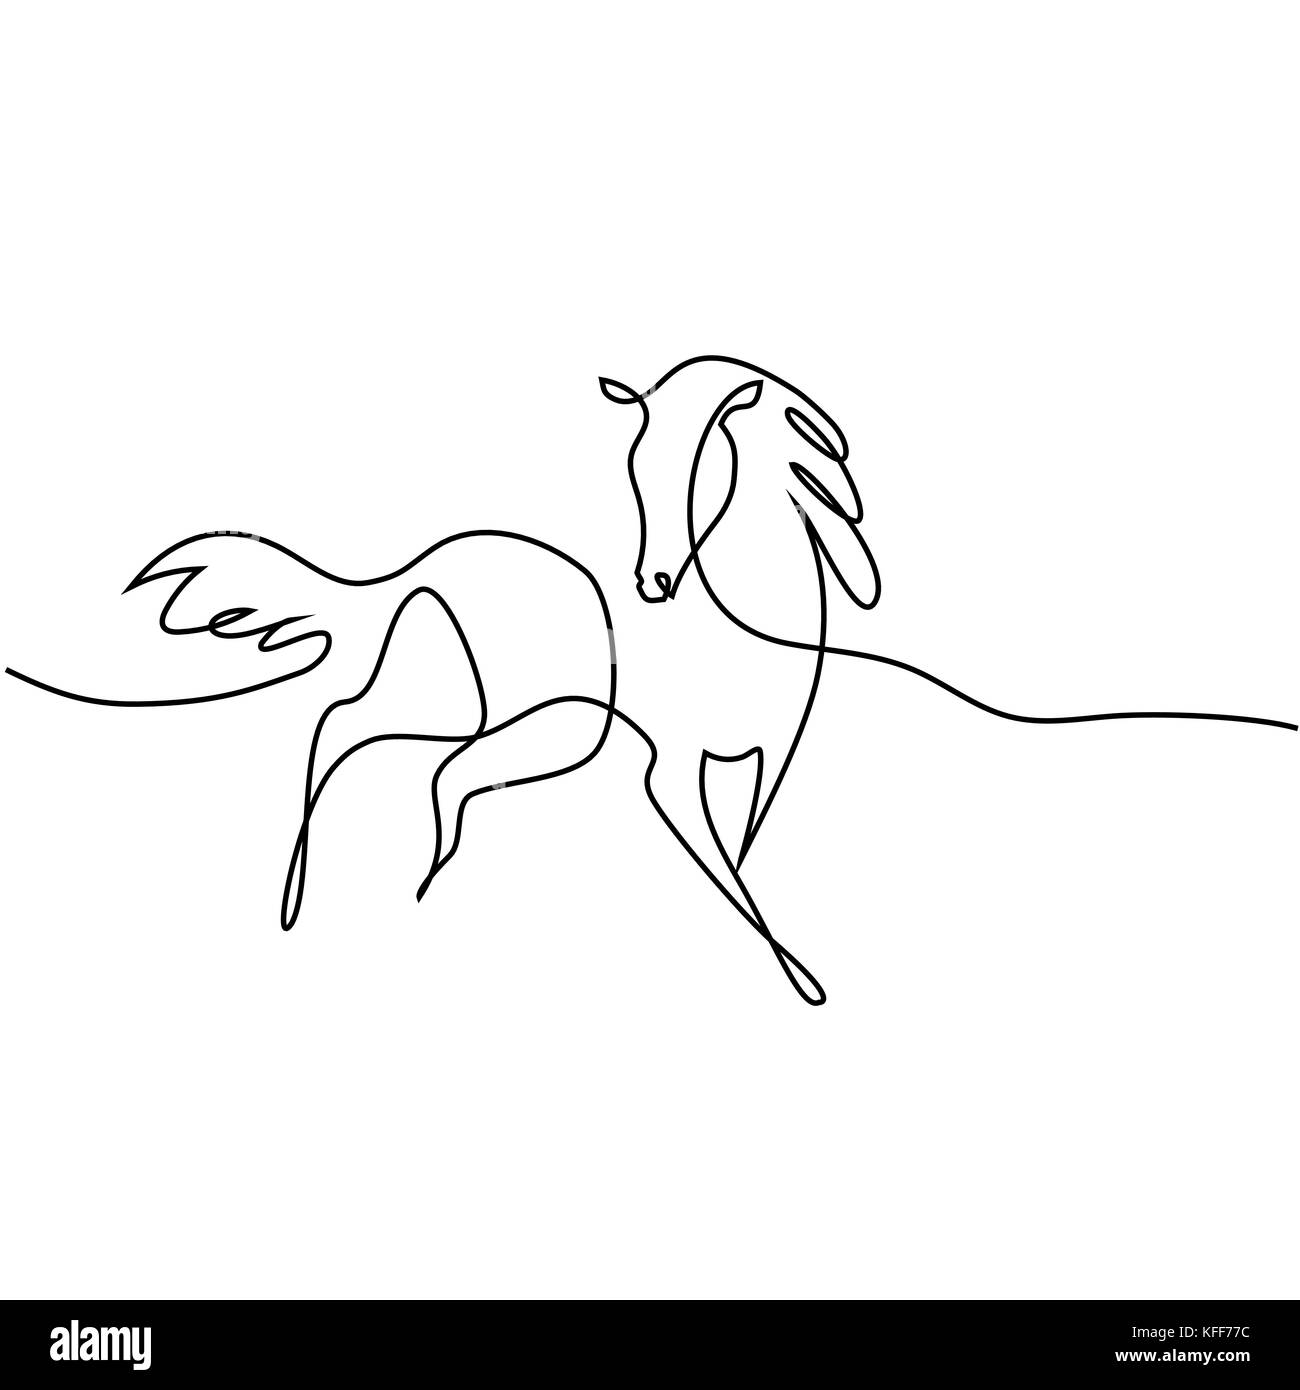 Continuo di un disegno della linea. Il logo di cavallo. Bianco e nero illustrazione vettoriale. Concetto di logo, scheda, banner, poster, flyer Illustrazione Vettoriale